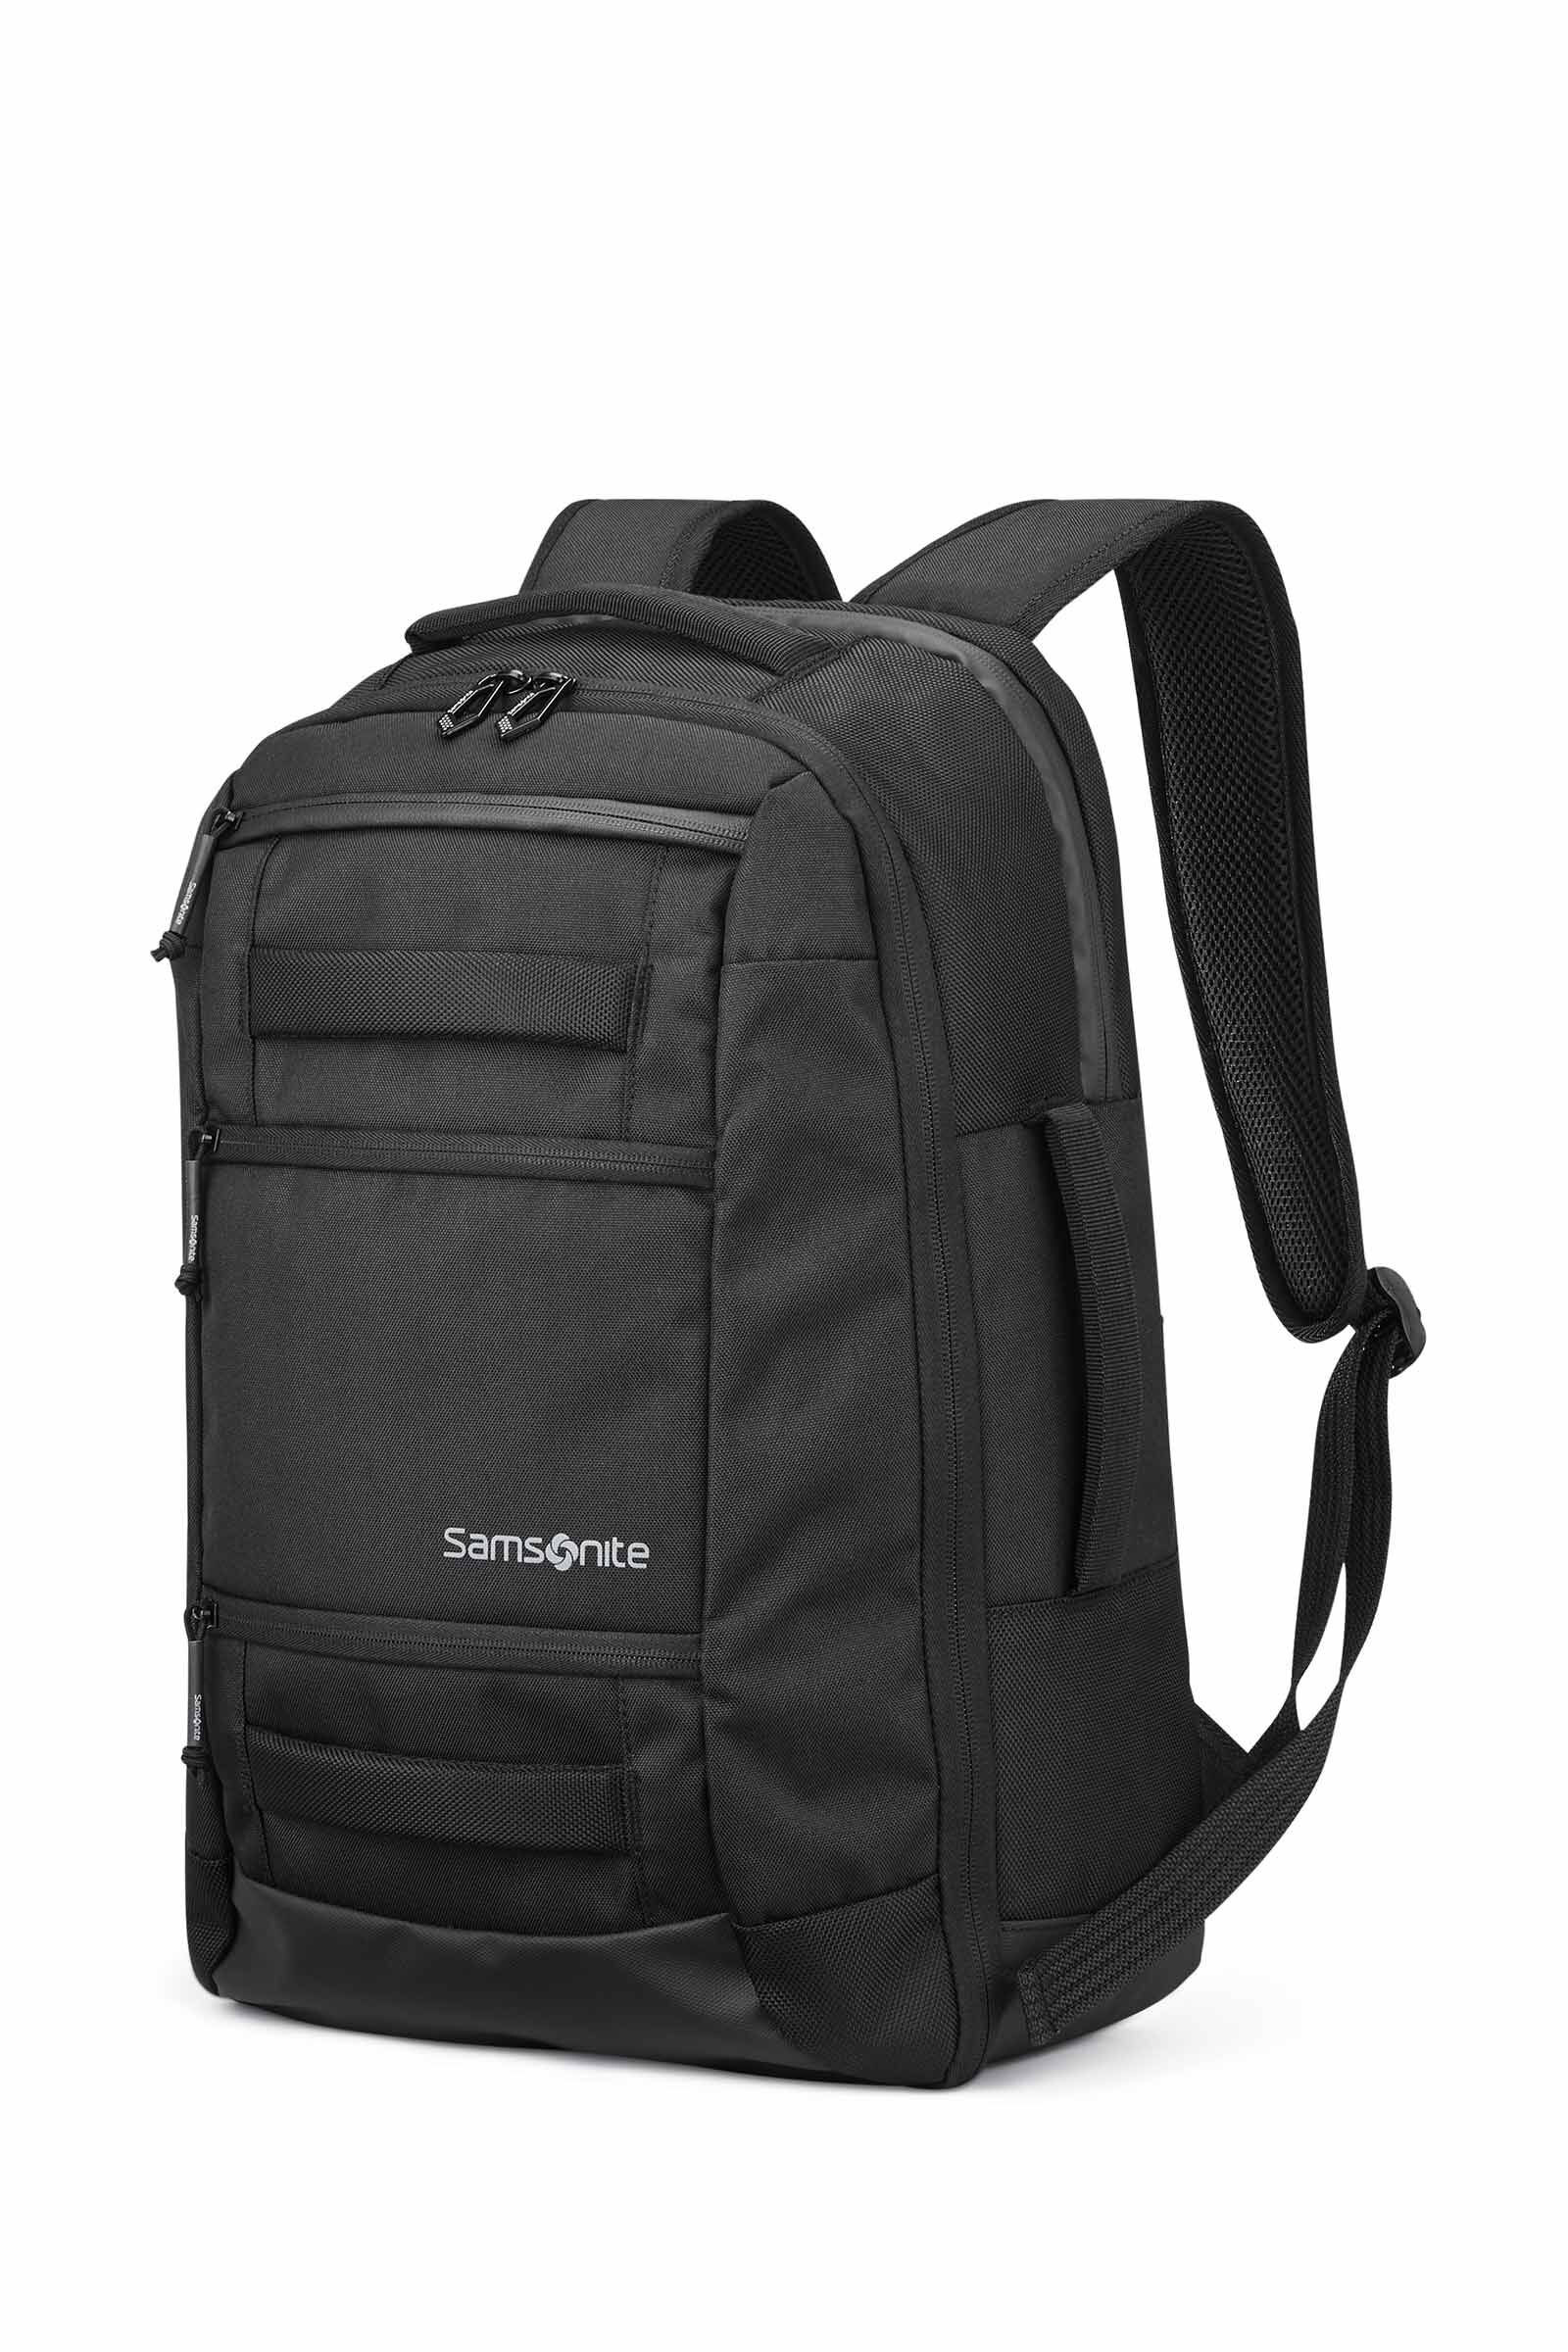 Reinforced Bulletproof Travel Bags : Samsonite SXK